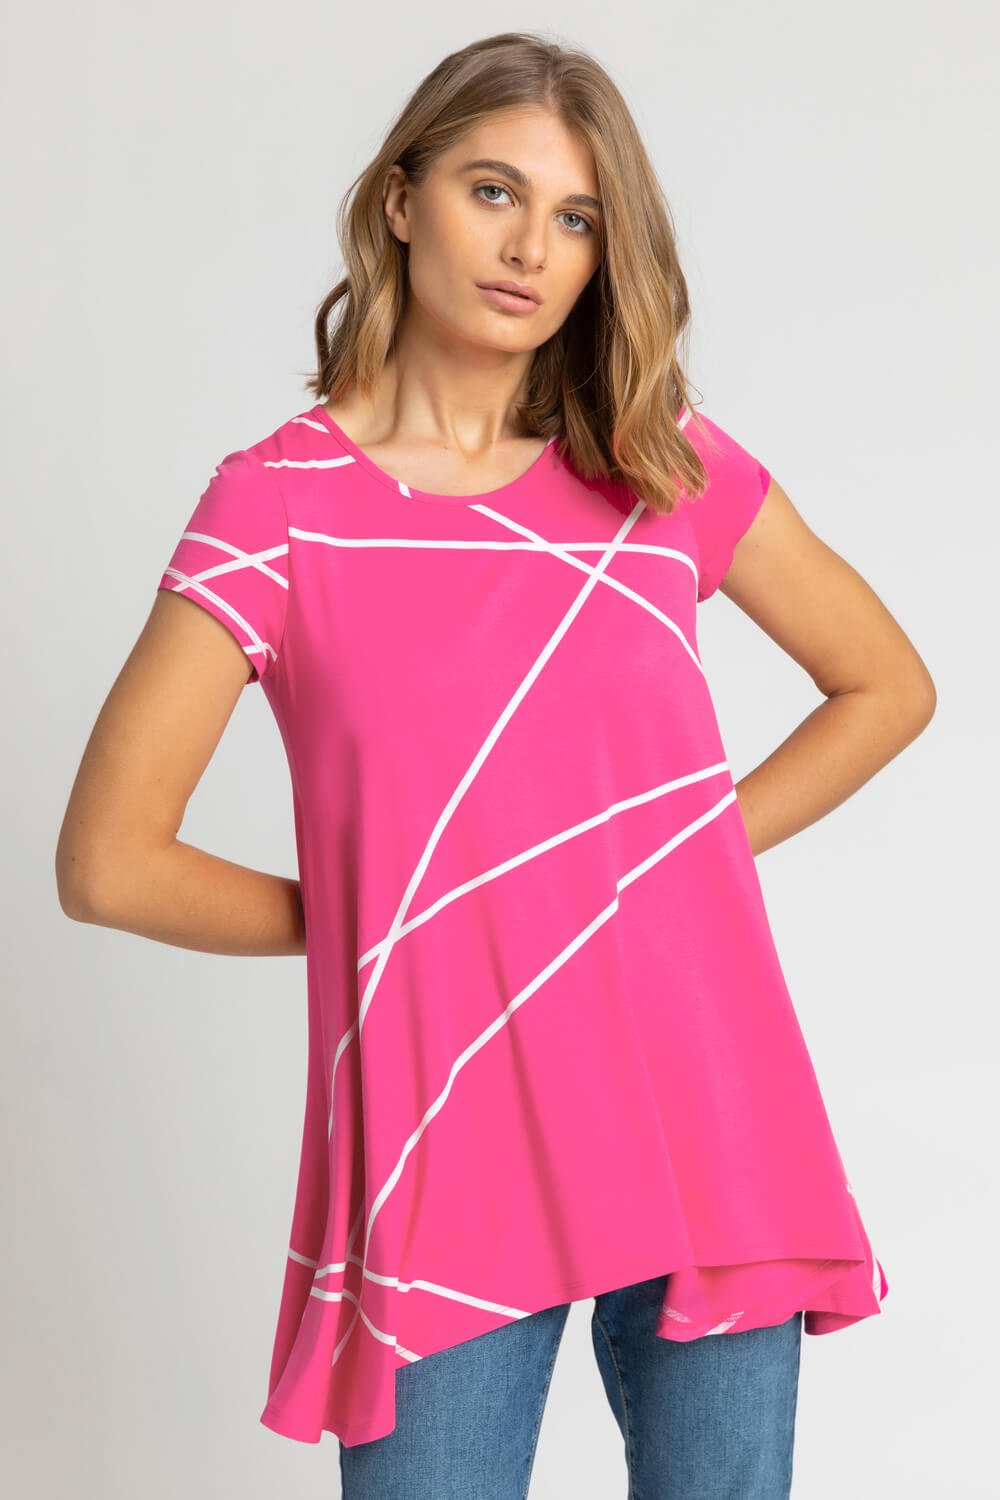 Lace Overlay Hanky Hem Vest Top in Pink - Roman Originals UK